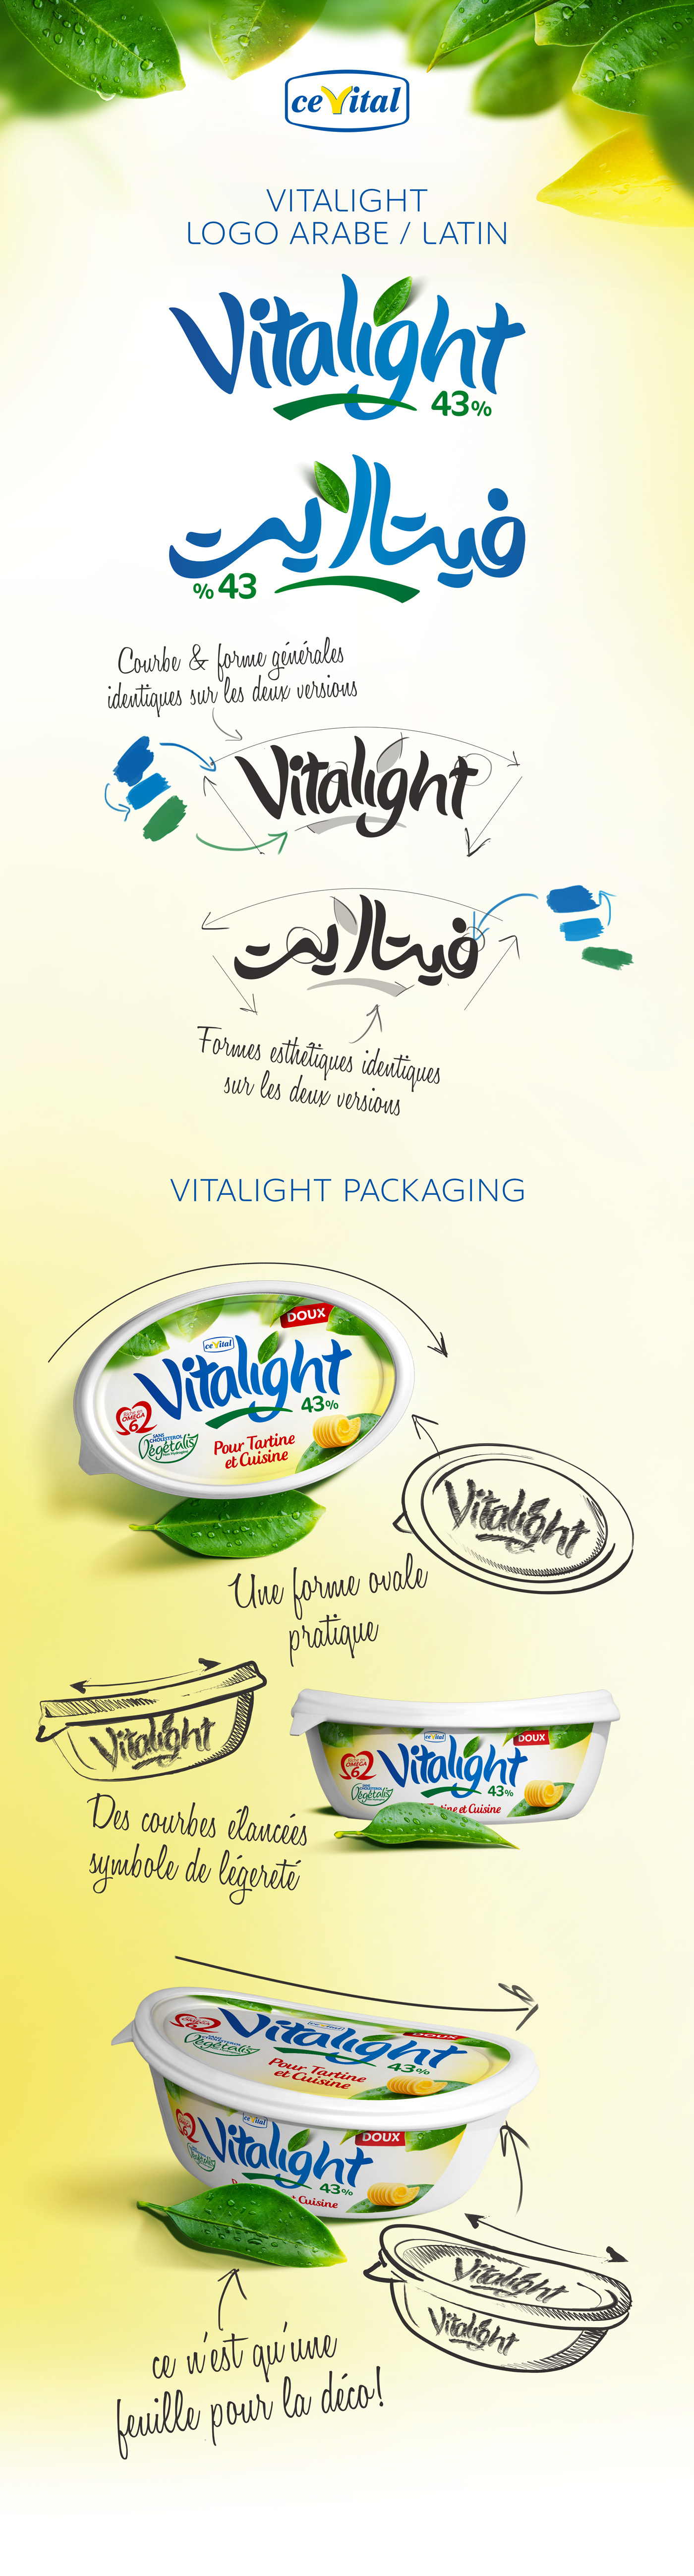 Packaging CEVITAL butter margarine identity brand